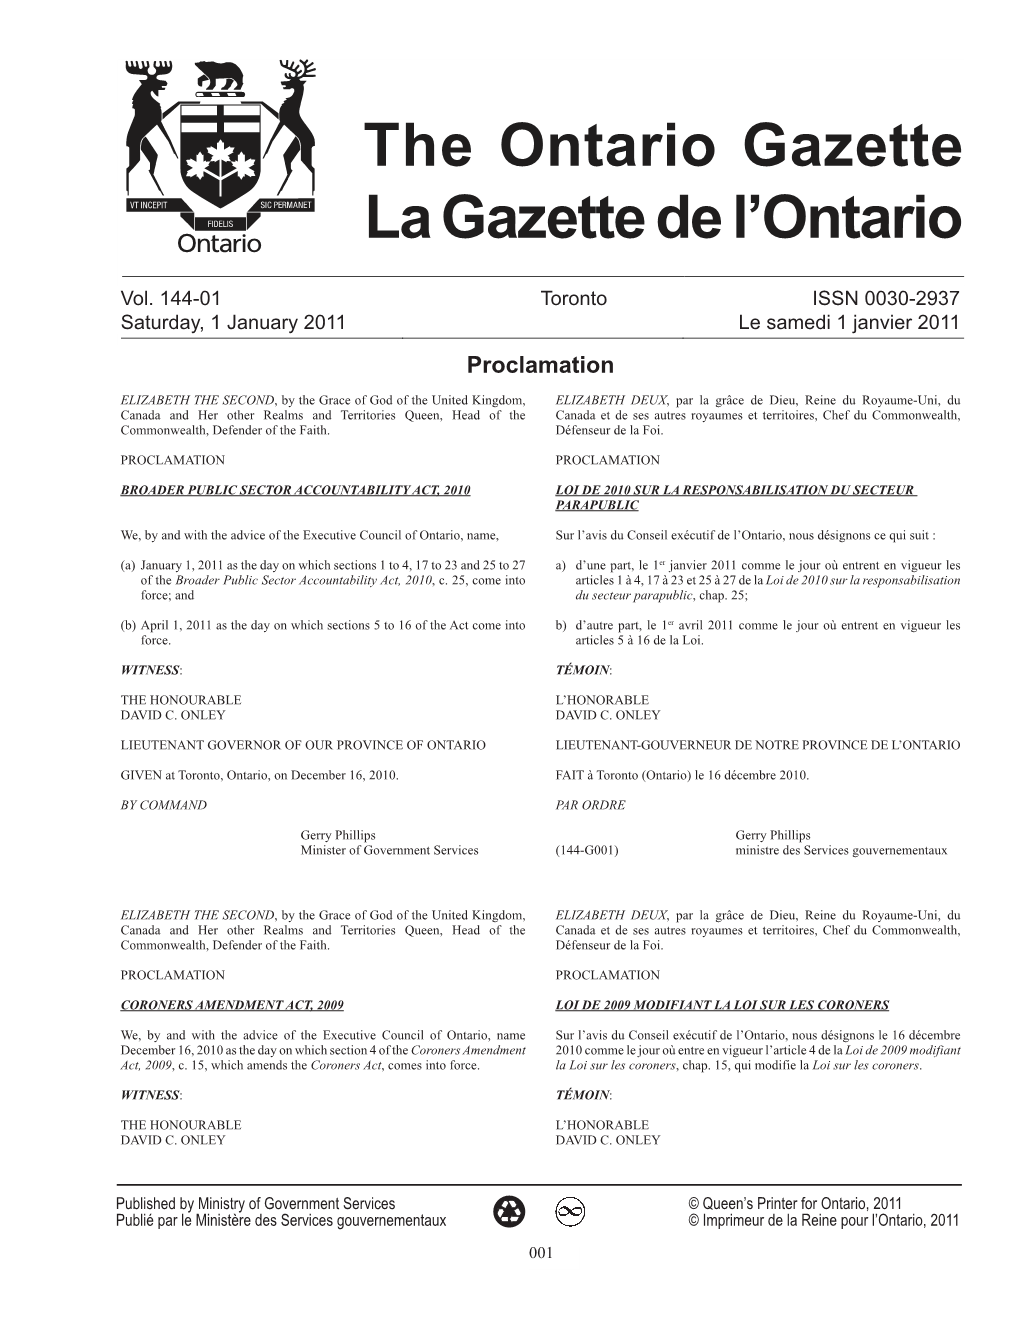 Ontario Gazette Volume 144 Issue 01, La Gazette De L'ontario Volume 144